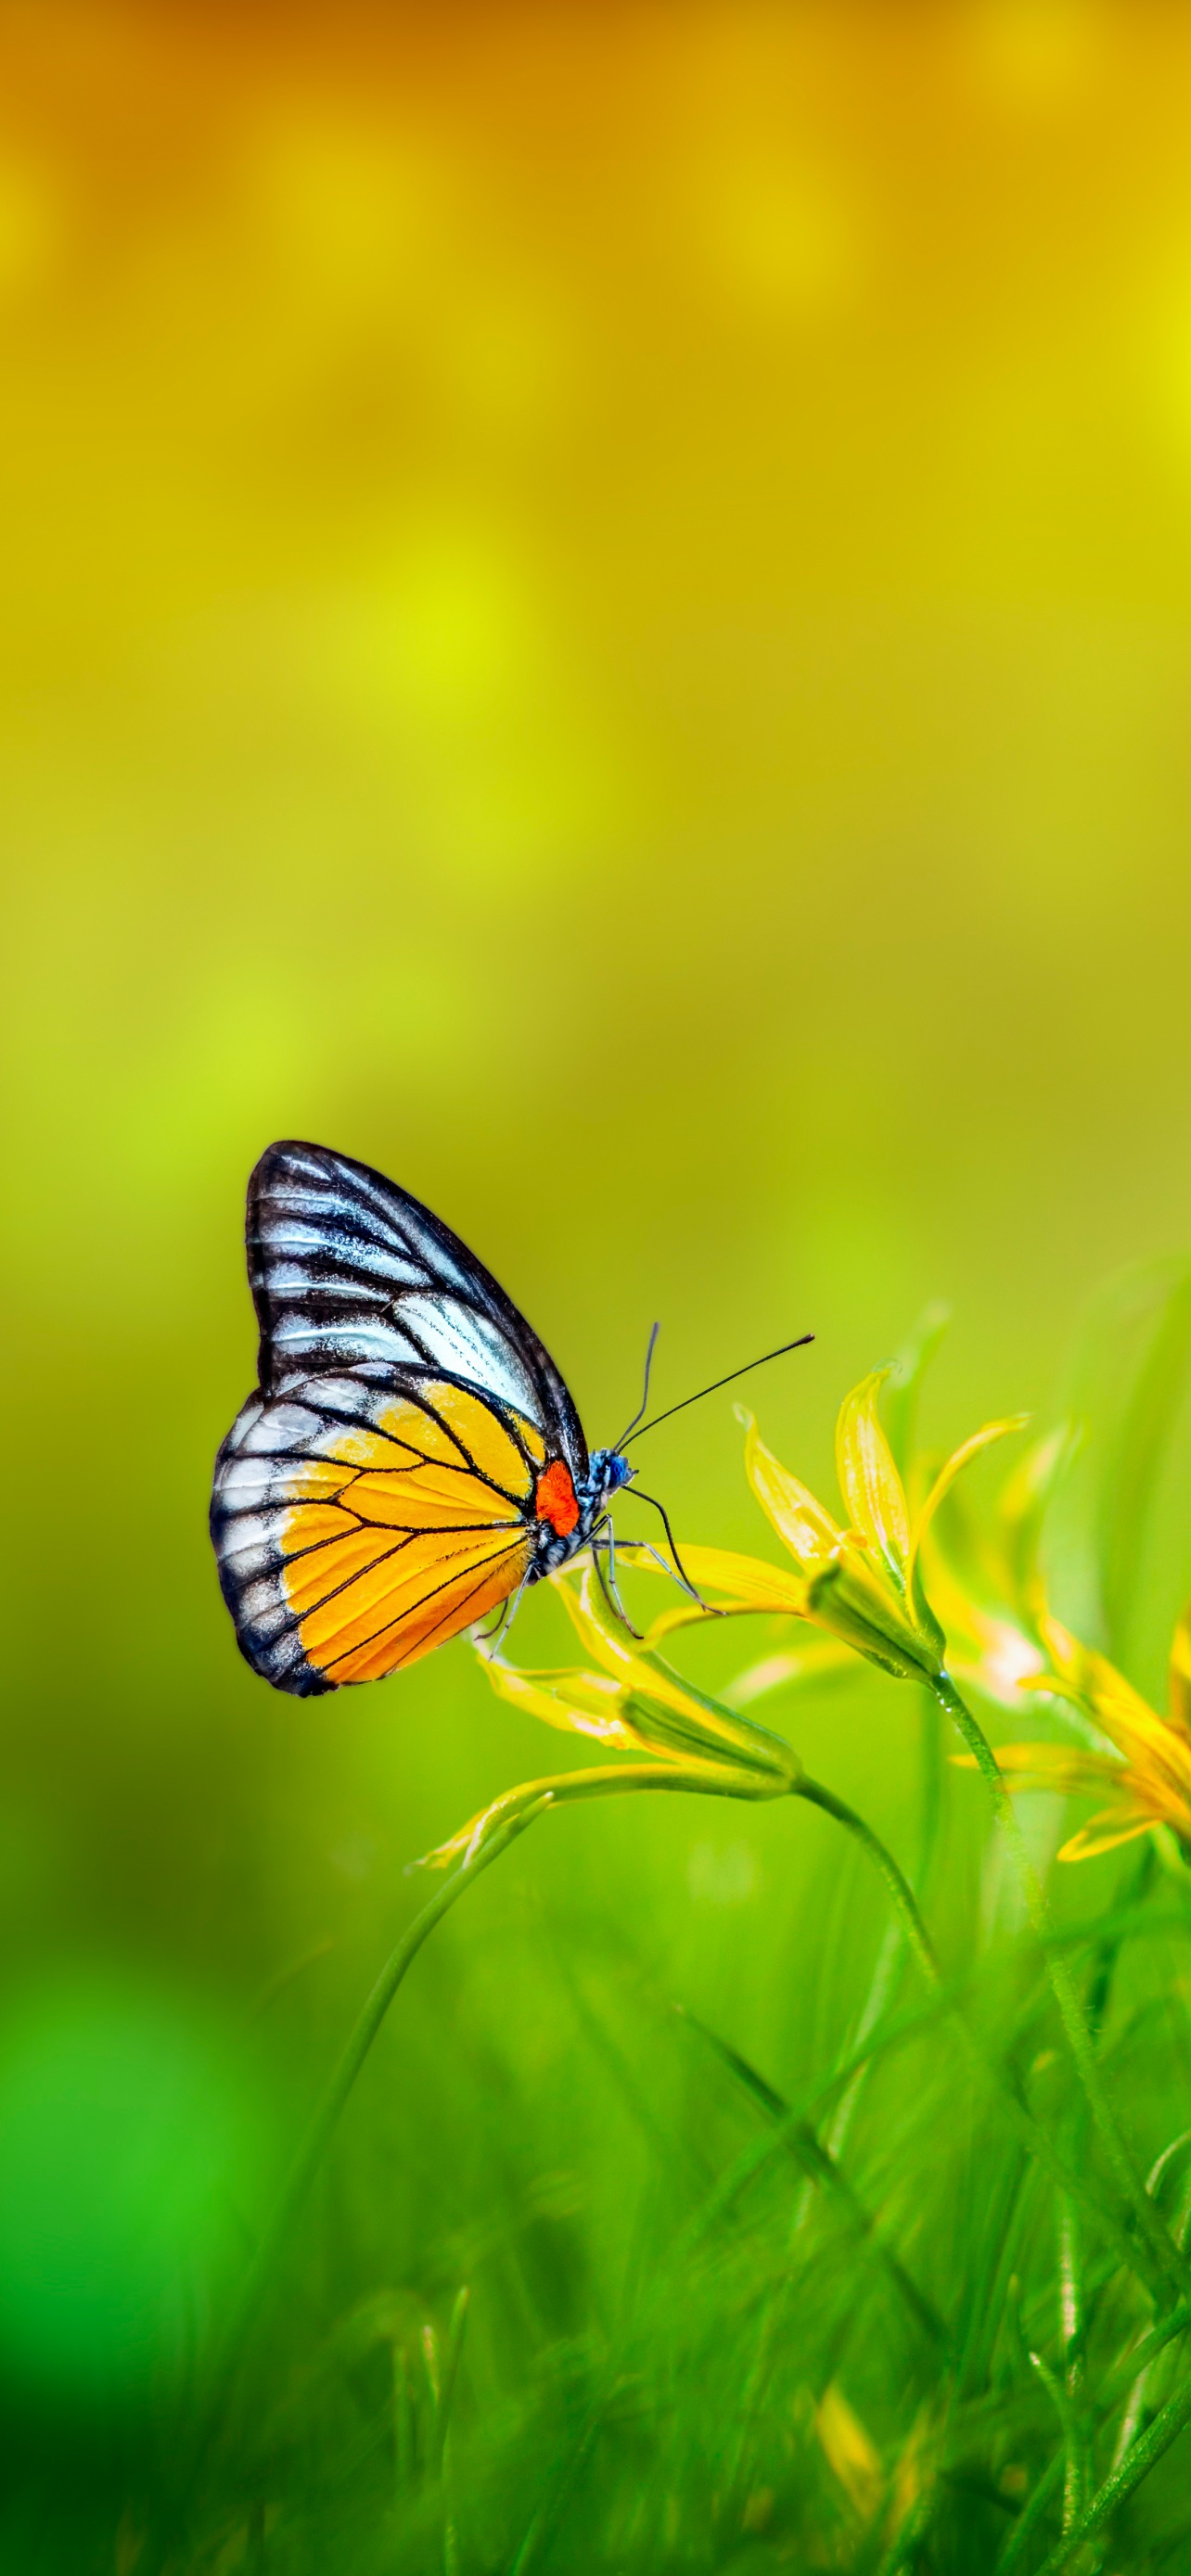 Hãy cùng tìm hiểu về loài hoa bướm đầy sắc màu trong hình ảnh này. Hoa bướm luôn là biểu tượng của sự tự do và sự độc đáo. Các bạn sẽ được chiêm ngưỡng những bộ cánh tuyệt đẹp, thu hút mọi ánh nhìn. 